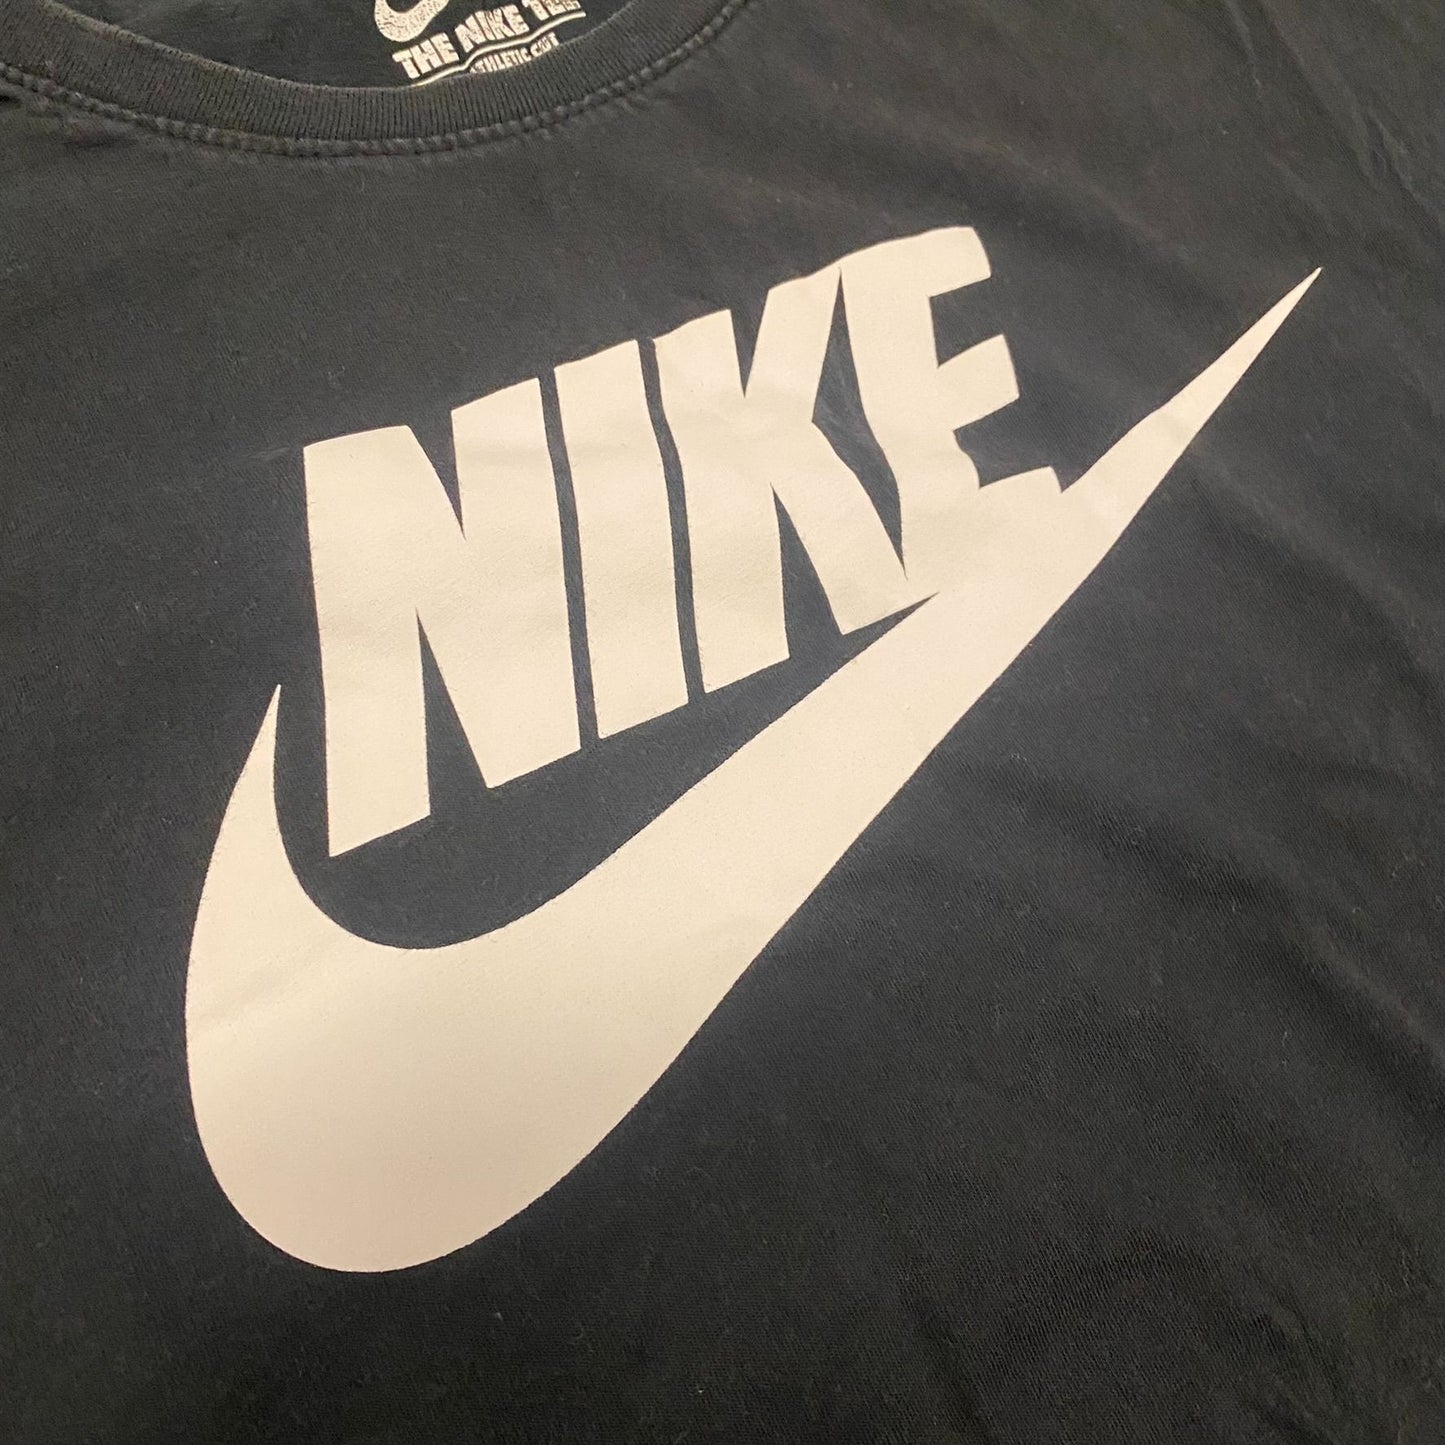 Nike Swoosh Black T-Shirt